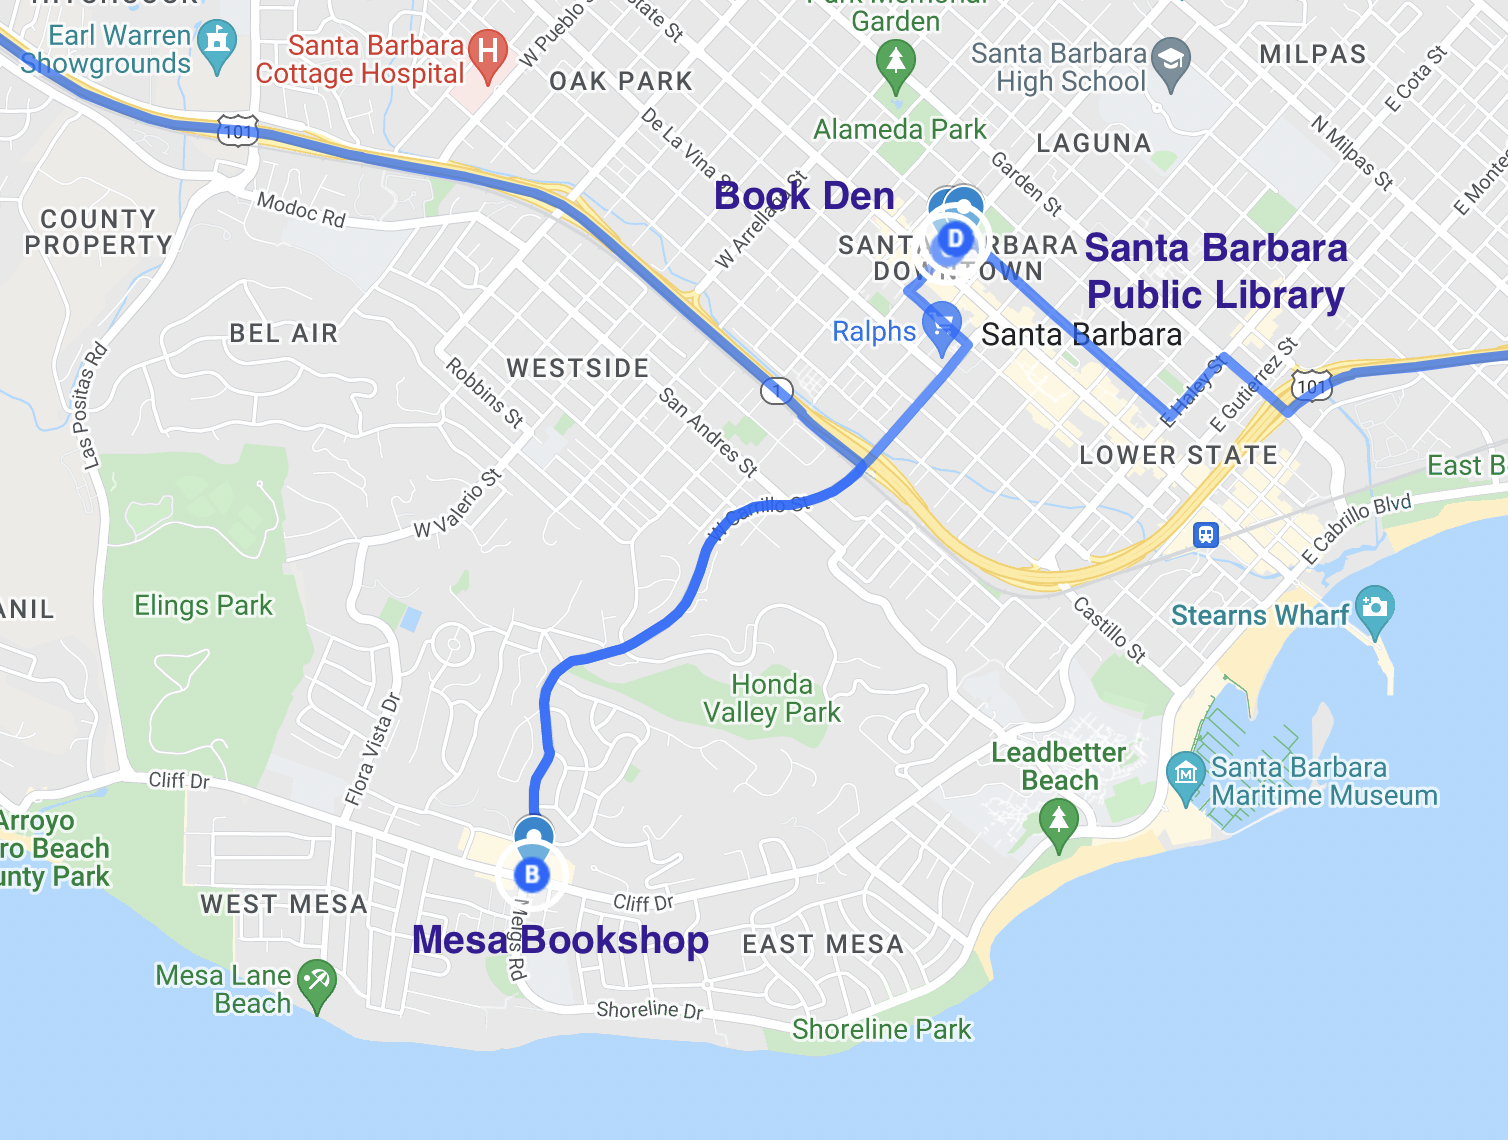 map of literary stops in santa barbara california